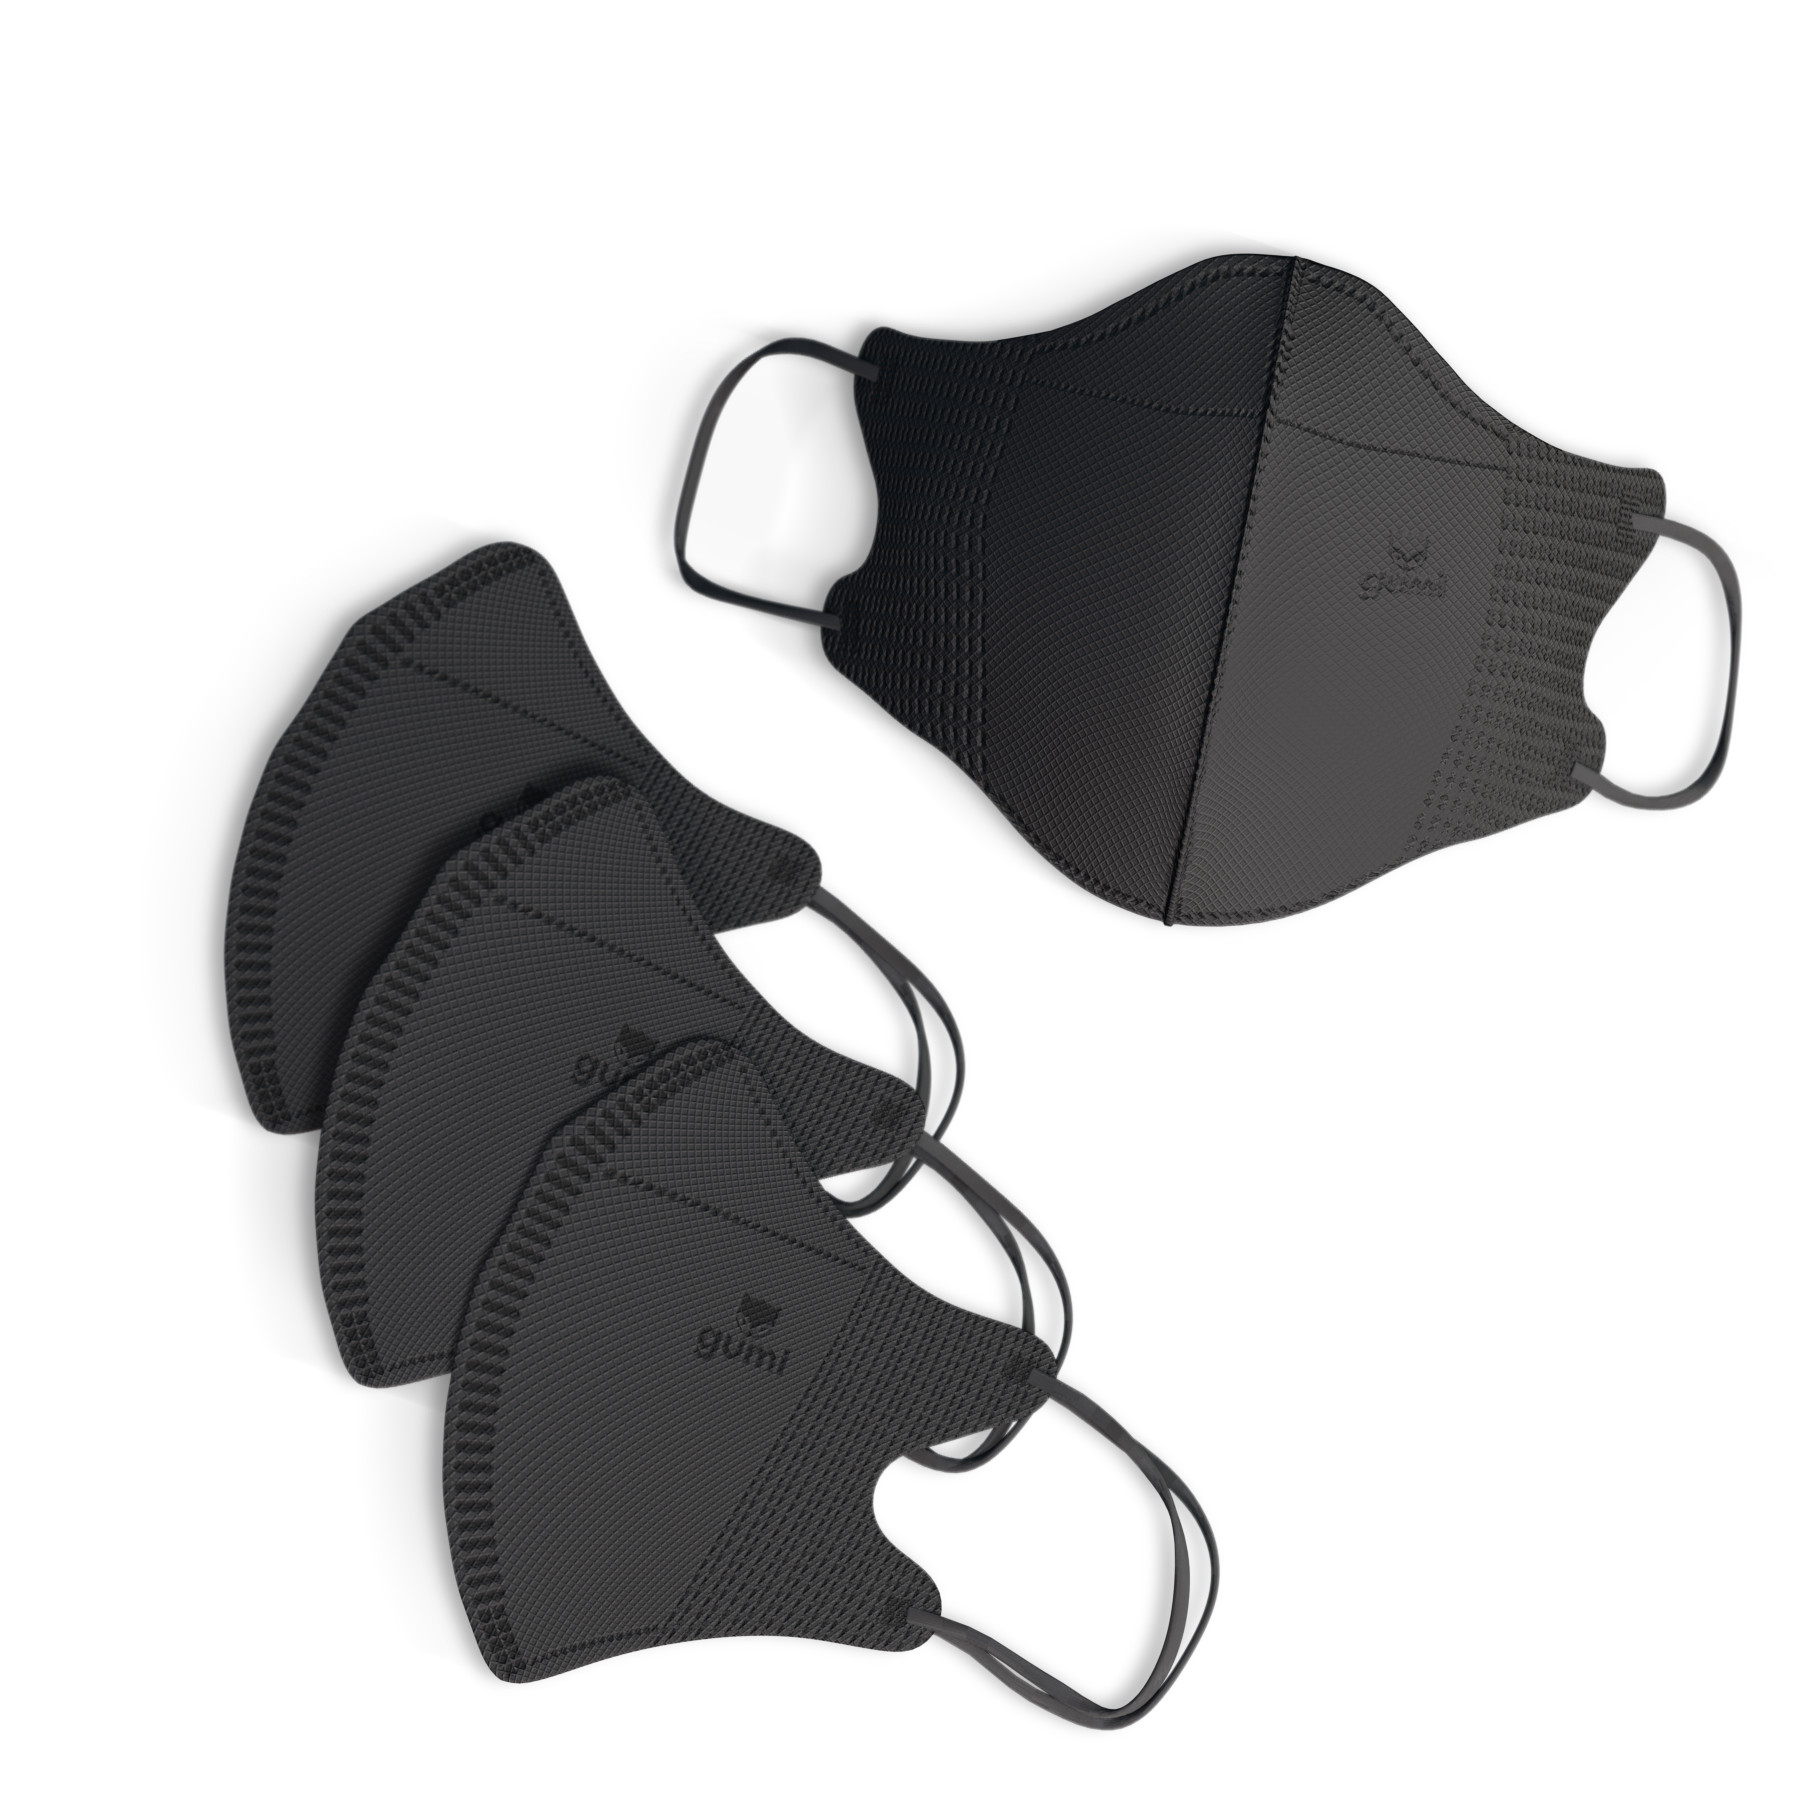 100 CHIẾC Khẩu trang màu đen 5D Gumi mask 3 lớp kháng khuẩn lọc bụi PM 2.5